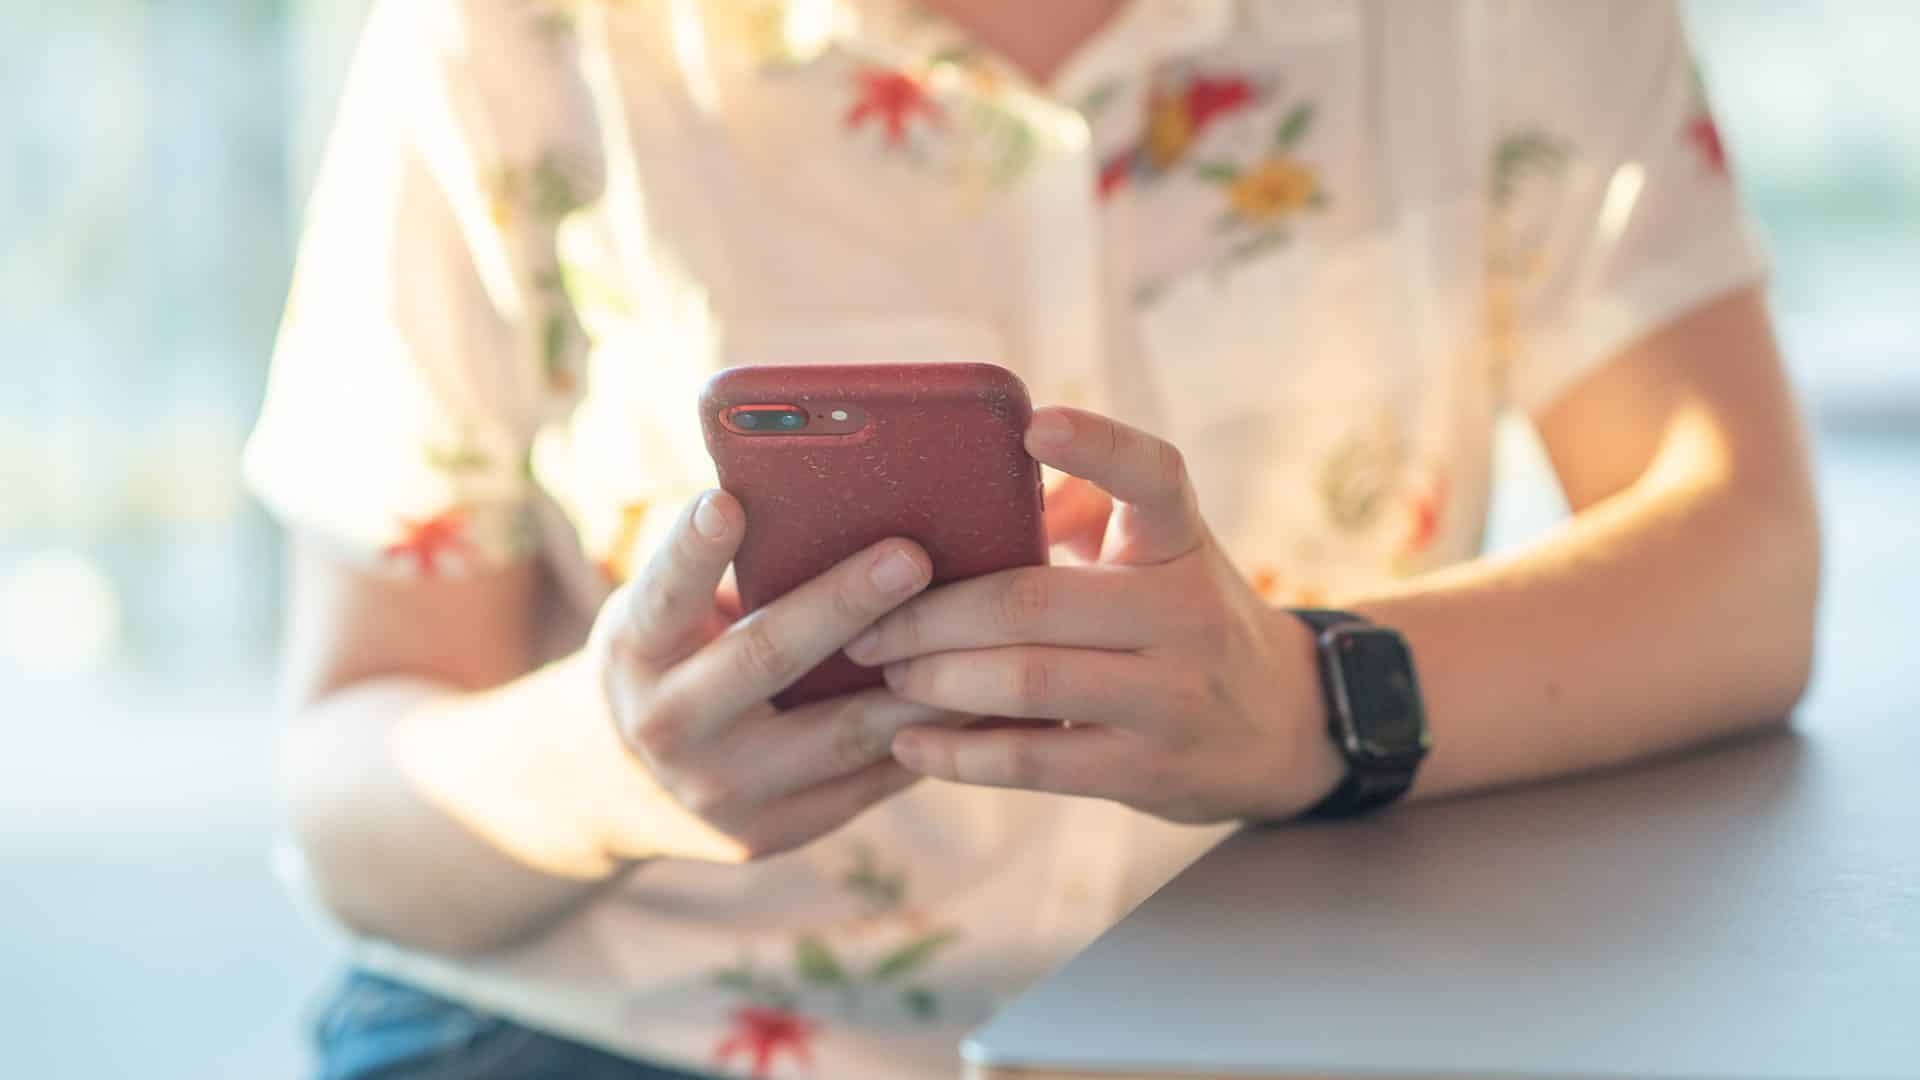 Kvinna sittandes med mobil i handen.